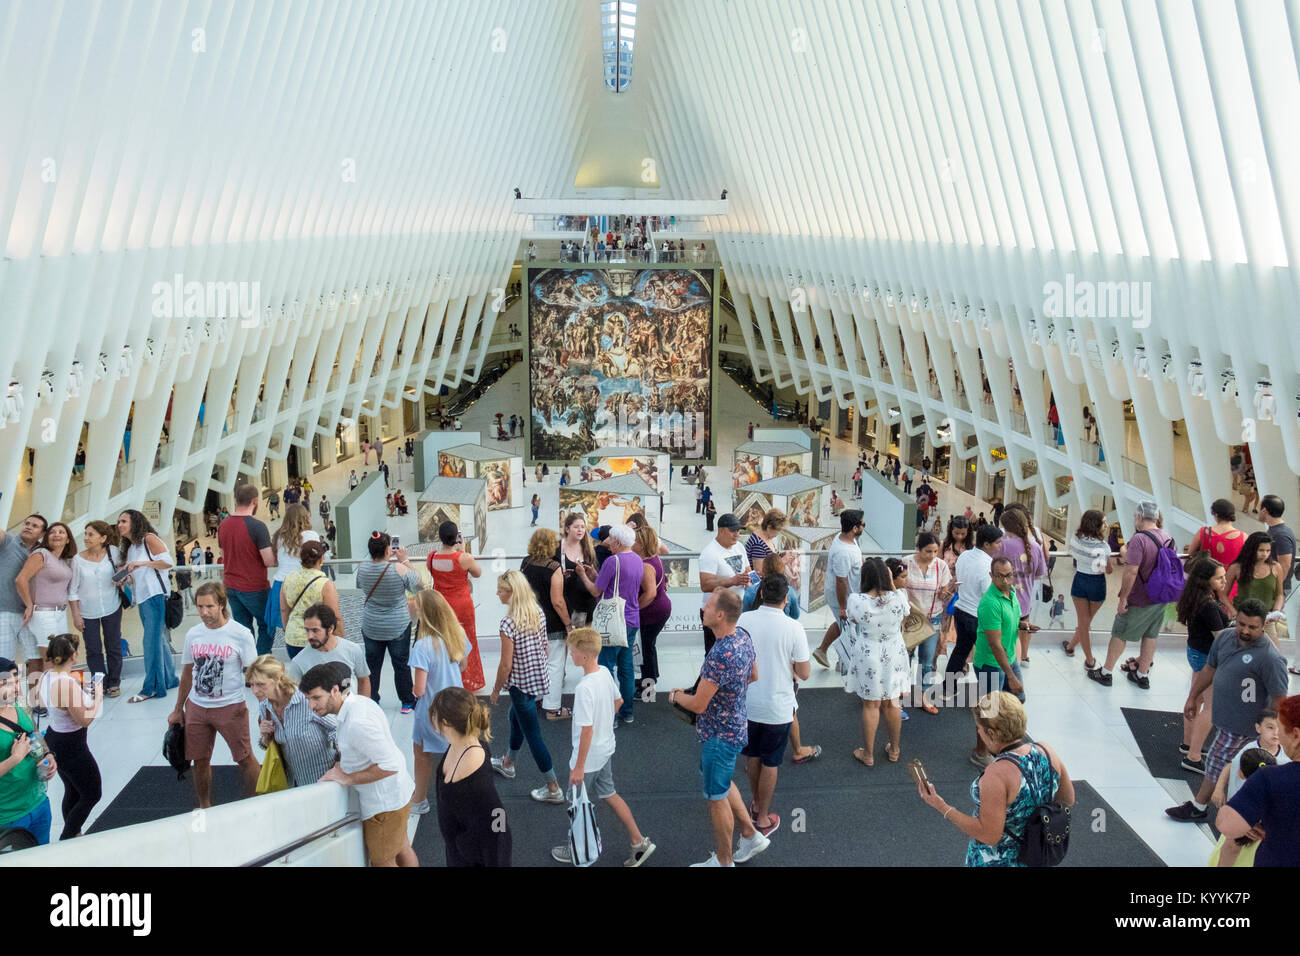 Exposición en el centro comercial Westfield World Trade Center, un centro comercial en el World Trade Center, Manhattan, Nueva York, EE.UU. Foto de stock